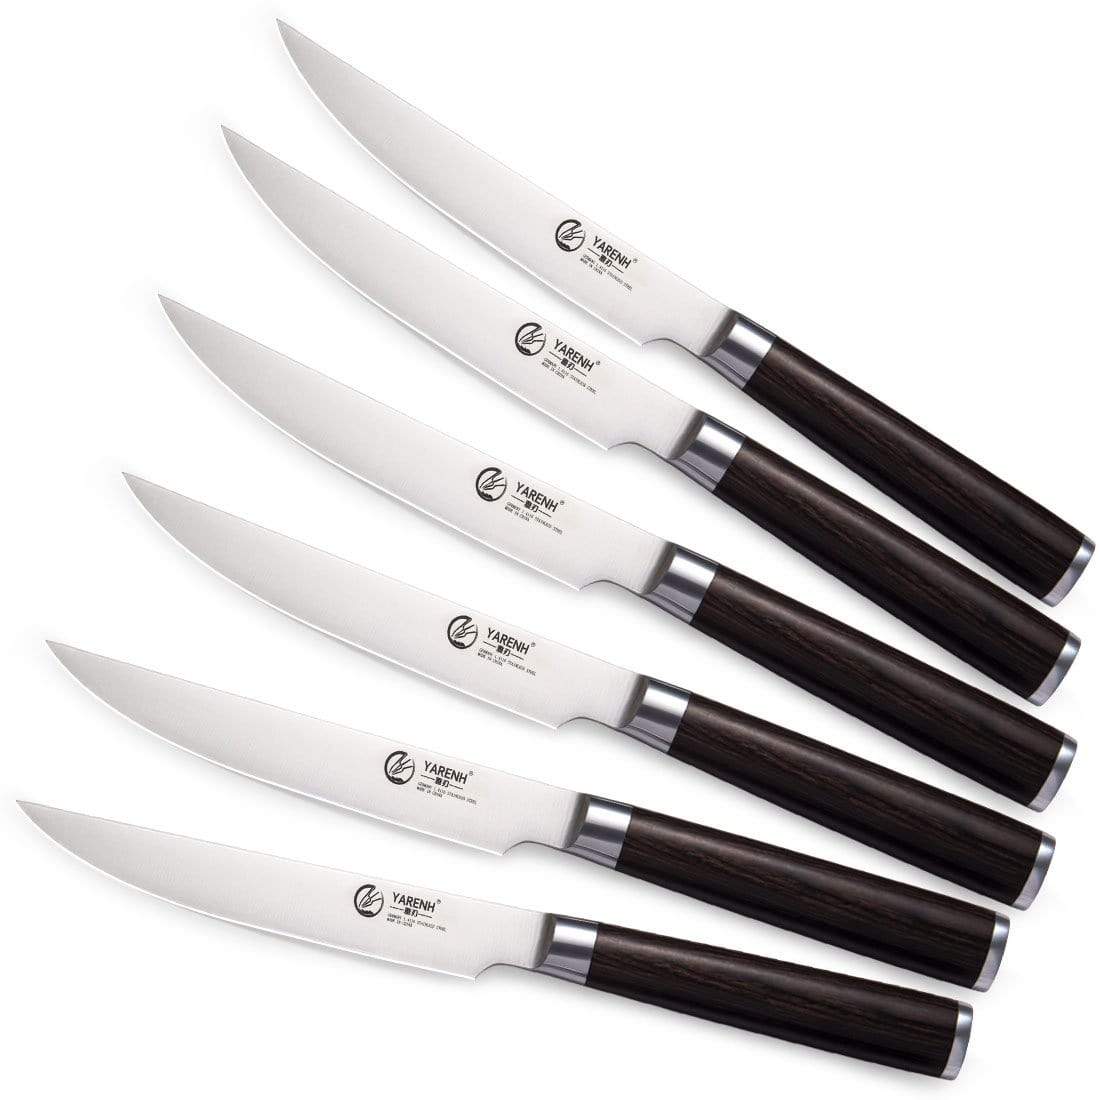 https://yarenhshop.com/cdn/shop/products/yarenh-hxz-series-steak-knives-set-6-piece-steak-knife-yarenh-28111300001967_1445x.jpg?v=1646446153